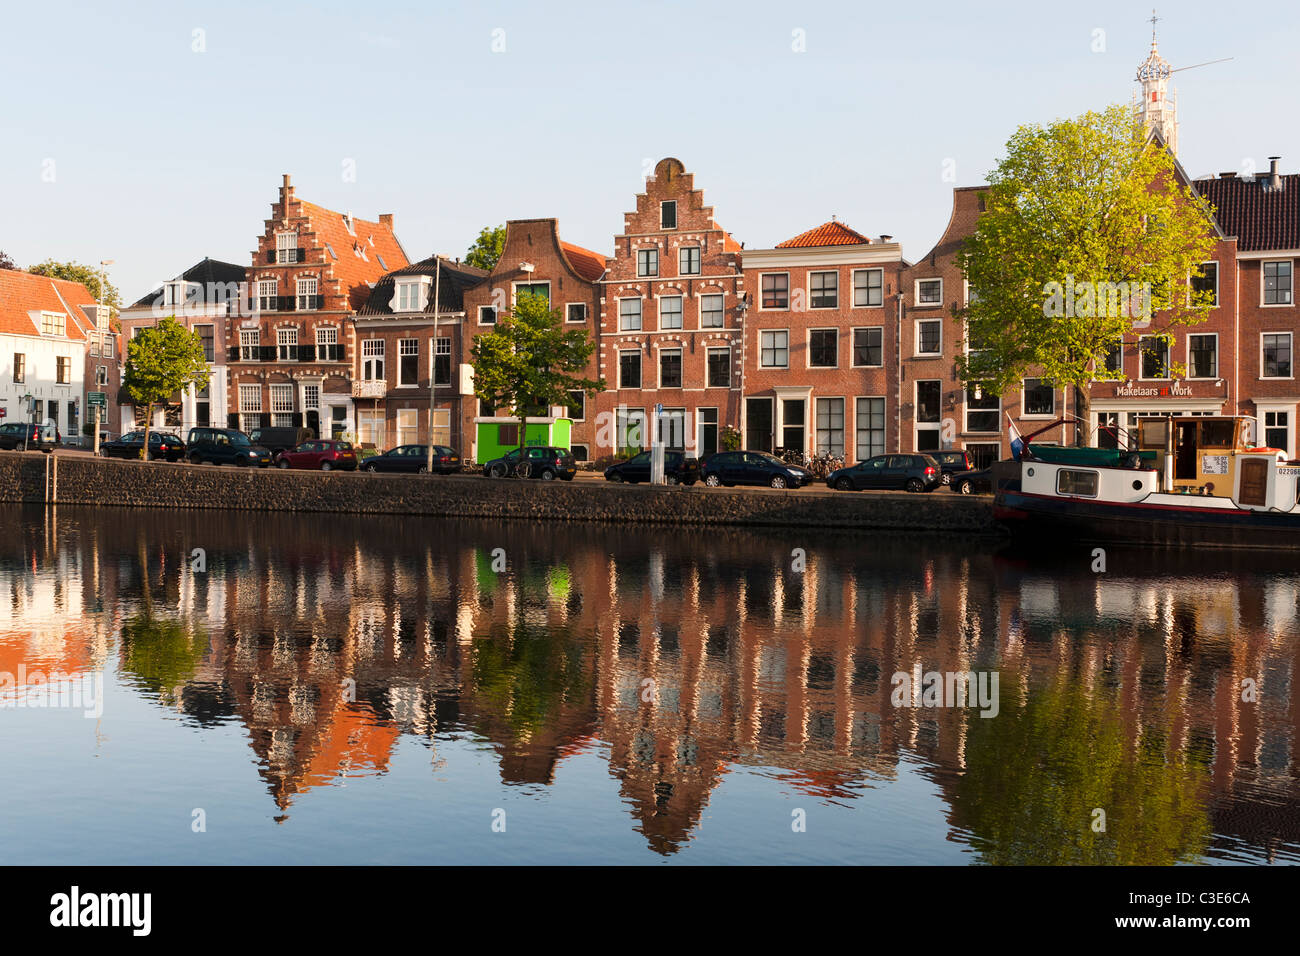 Maisons au bord de la rivière Spaarne à Haarlem, Pays-Bas Banque D'Images